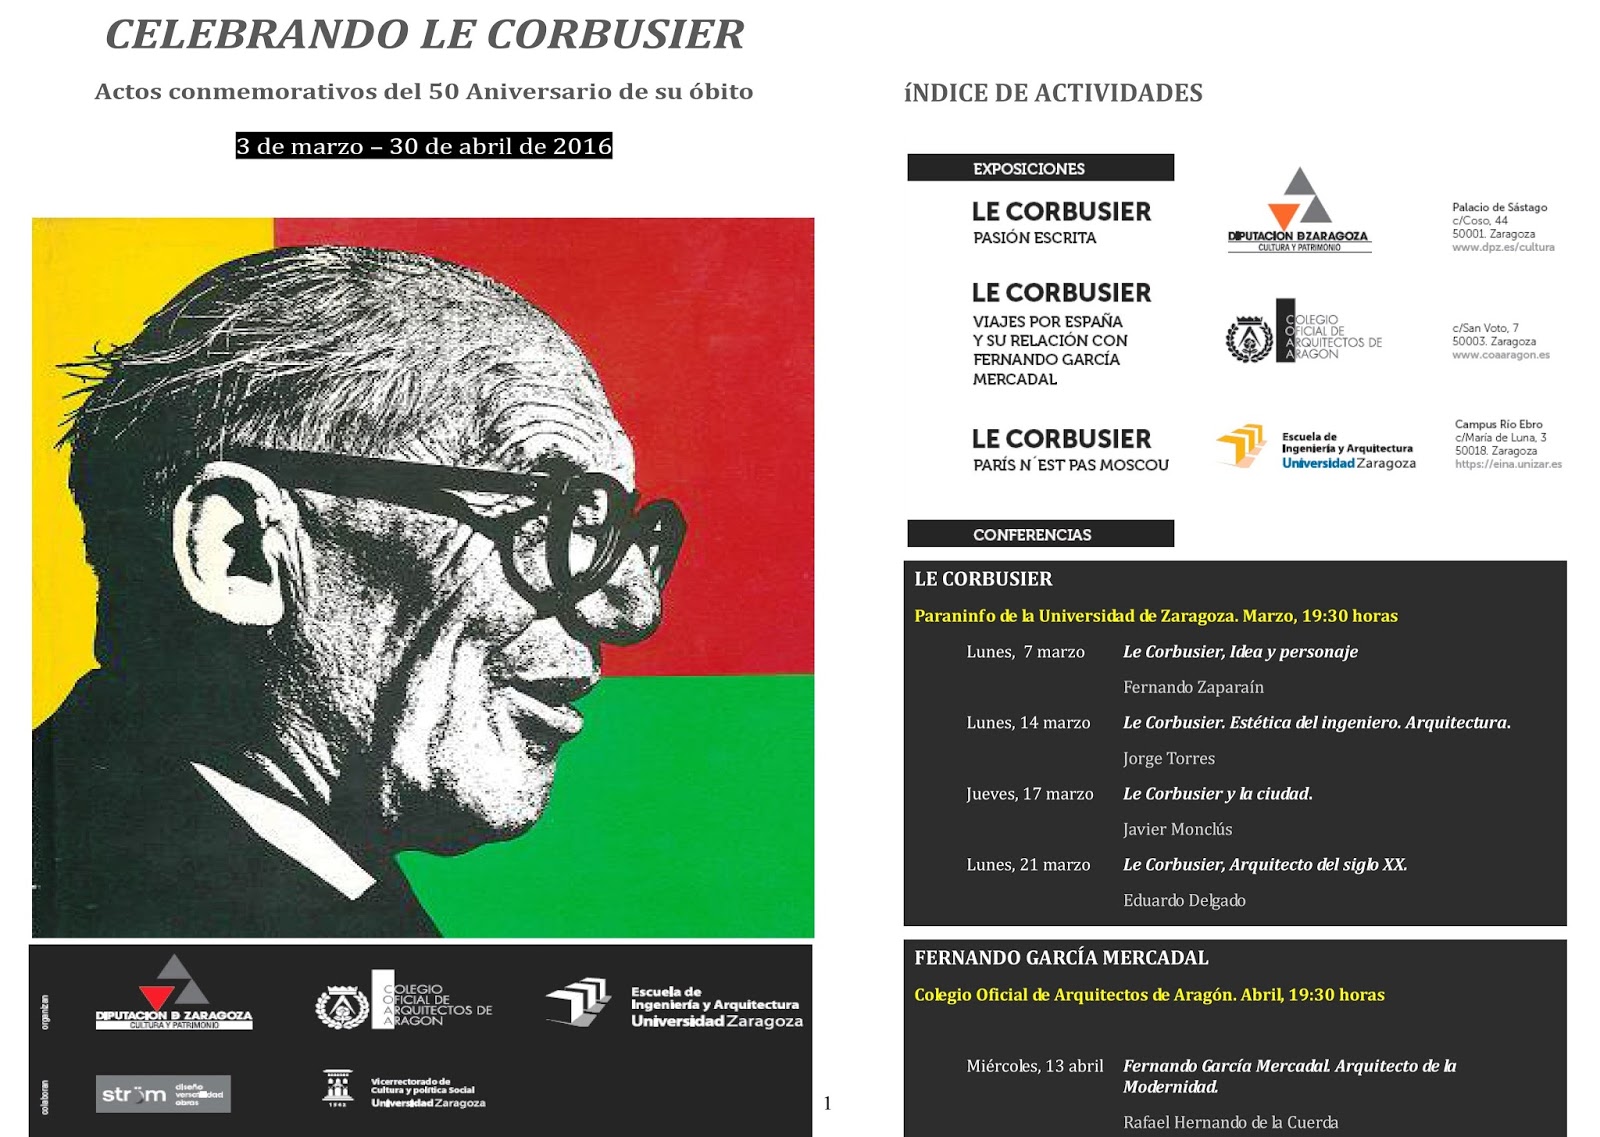 URBANISMO. Universidad de Zaragoza: Le Corbusier y la 